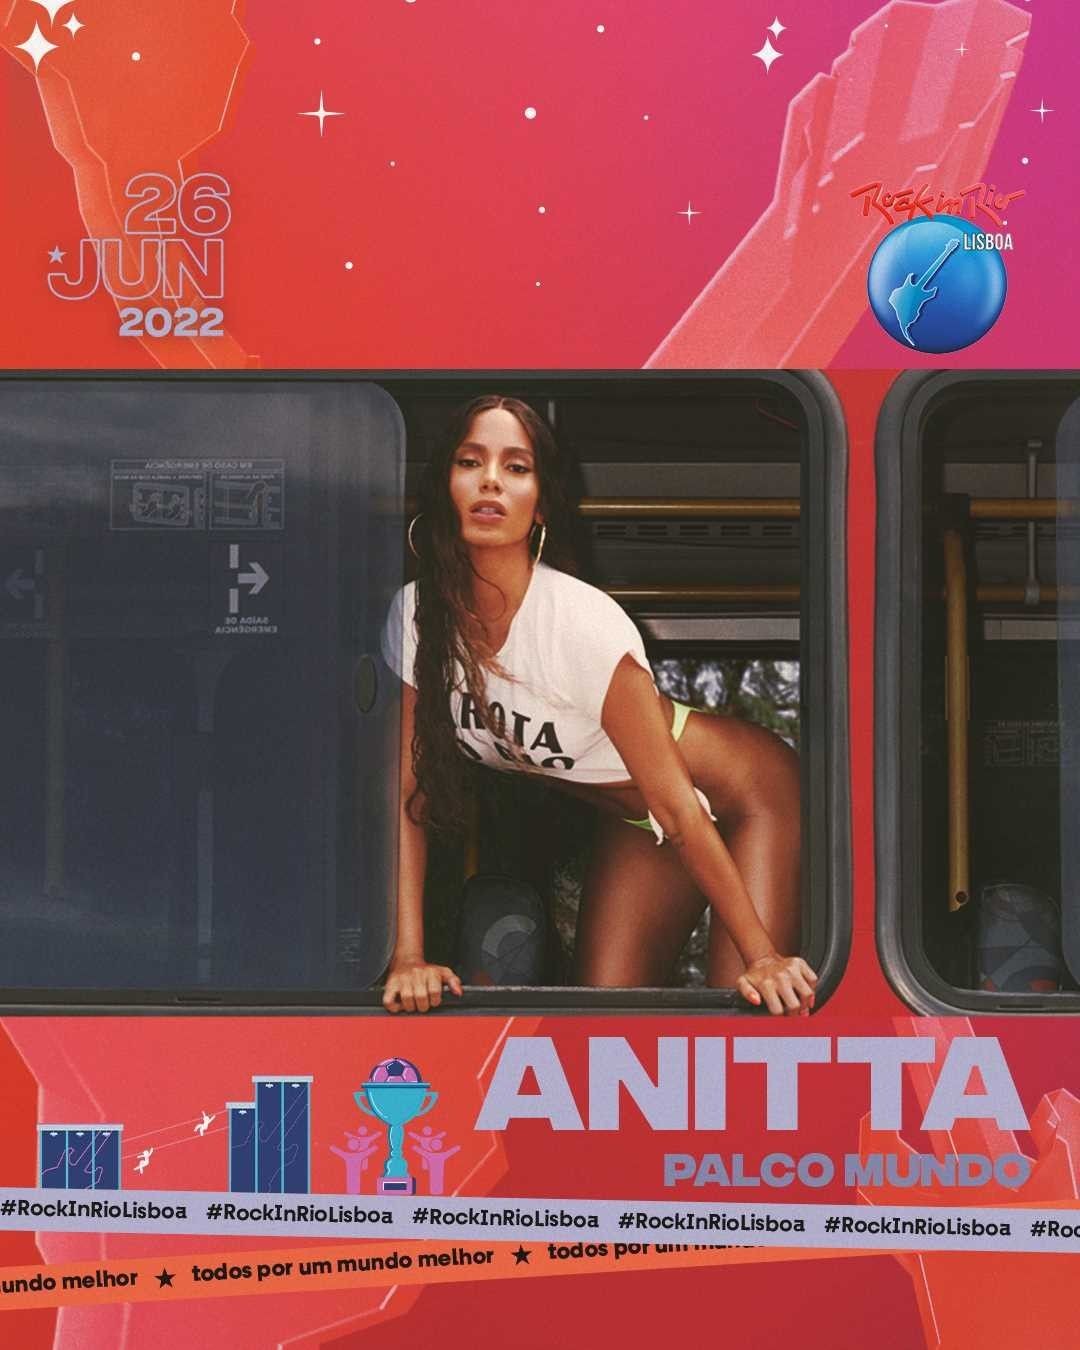 Anitta é confirmada no Rock in Rio Lisboa 2022: "Animada" (Foto: Reprodução/Instagram)